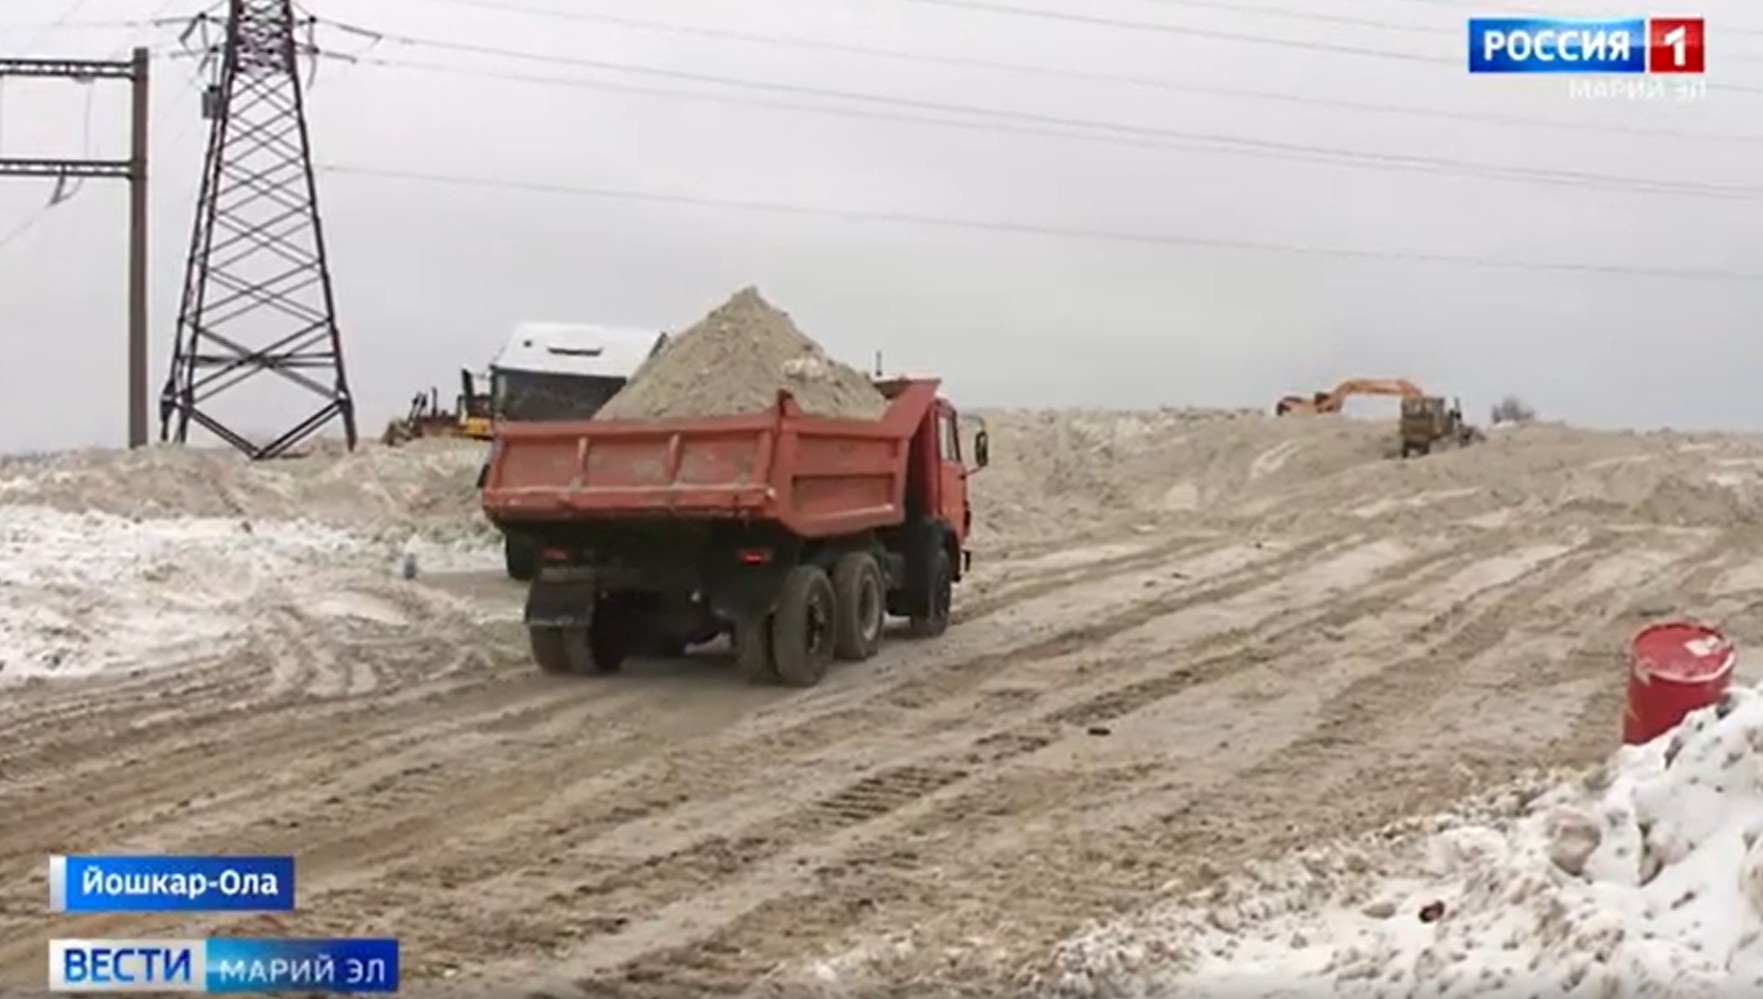 153 тысячи кубометров снега вывезли из Йошкар-Олы на полигон